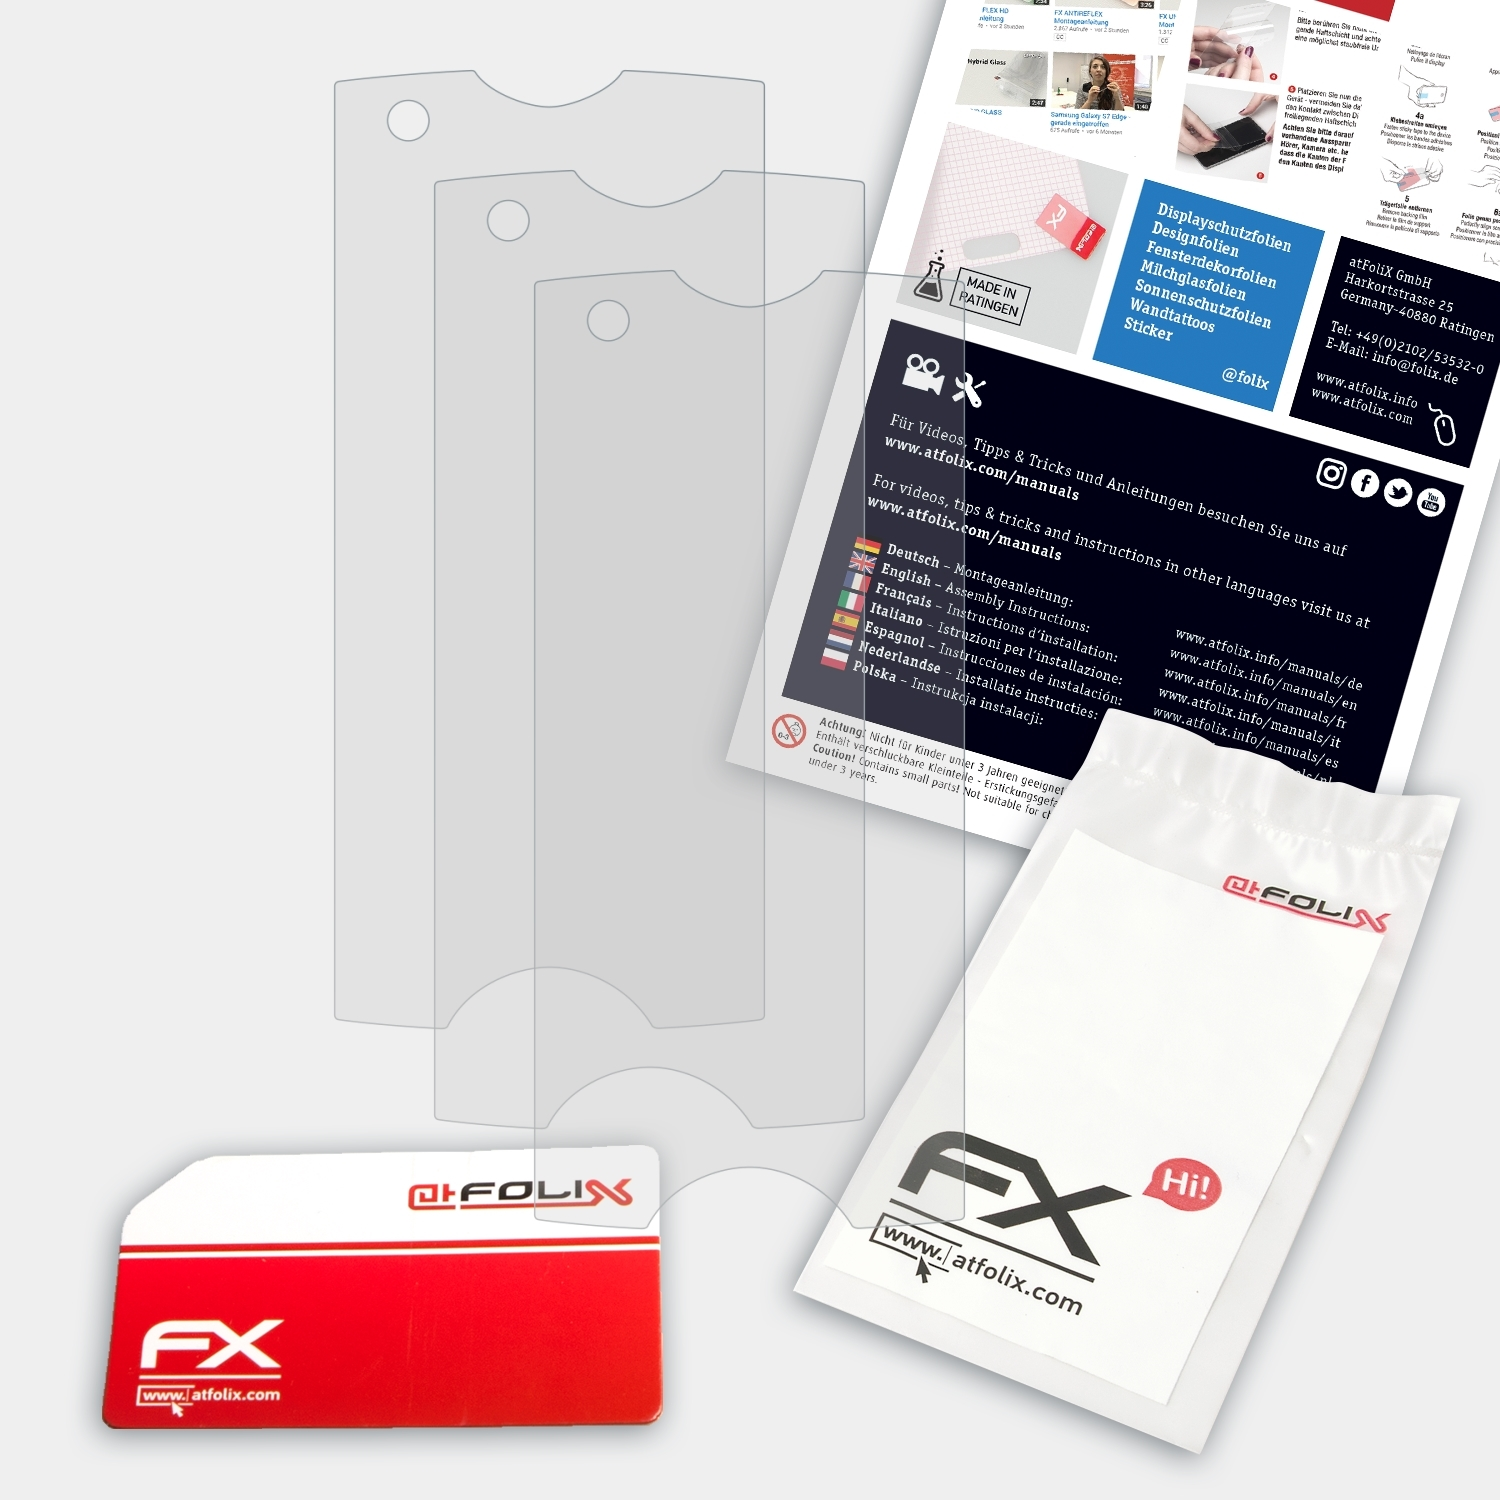 ATFOLIX Sony-Ericsson 3x Xperia Displayschutz(für ray) FX-Antireflex